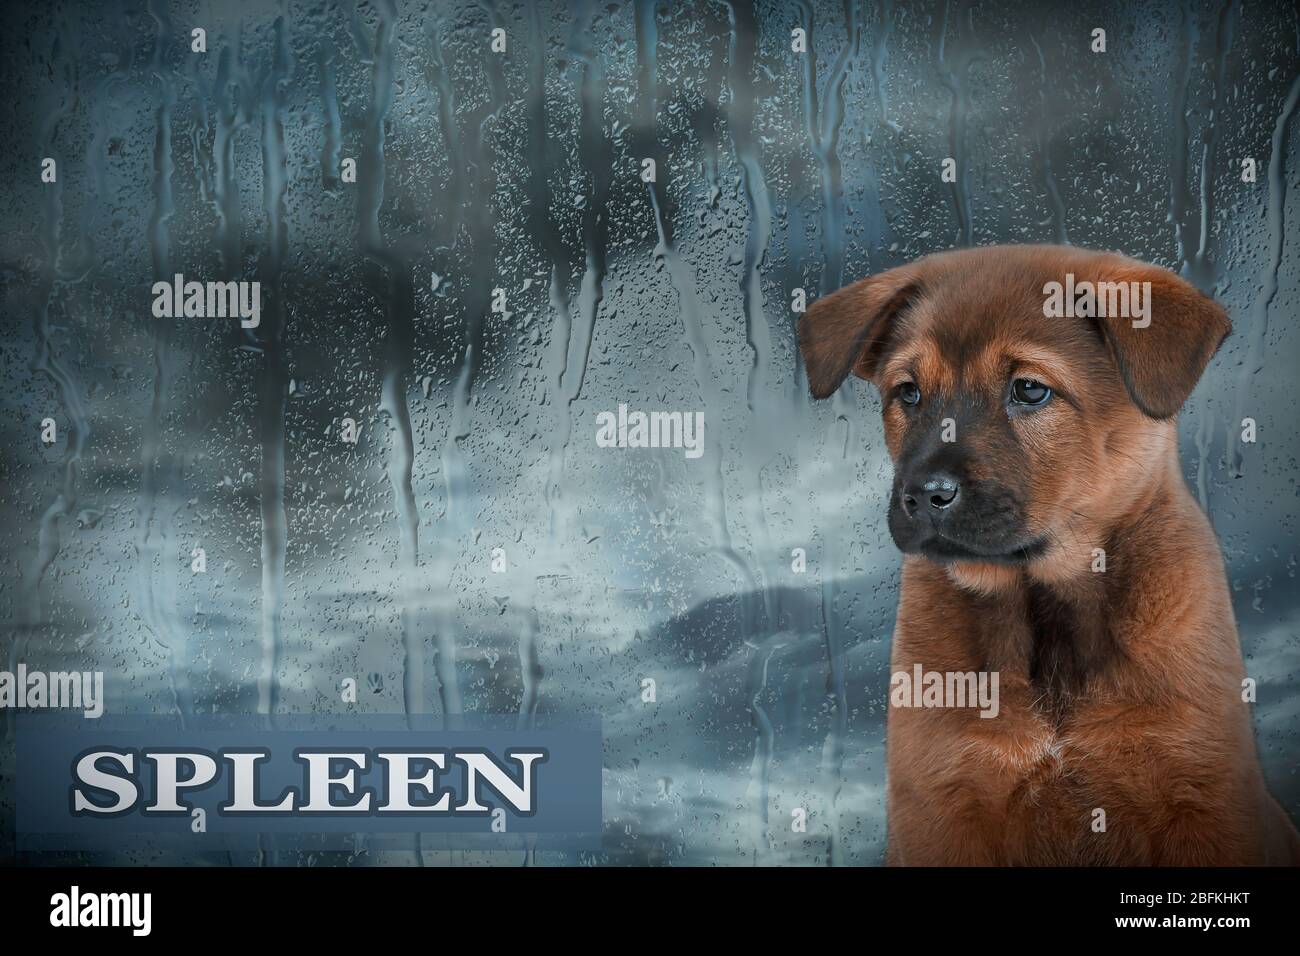 Sad dog on rain background Stock Photo